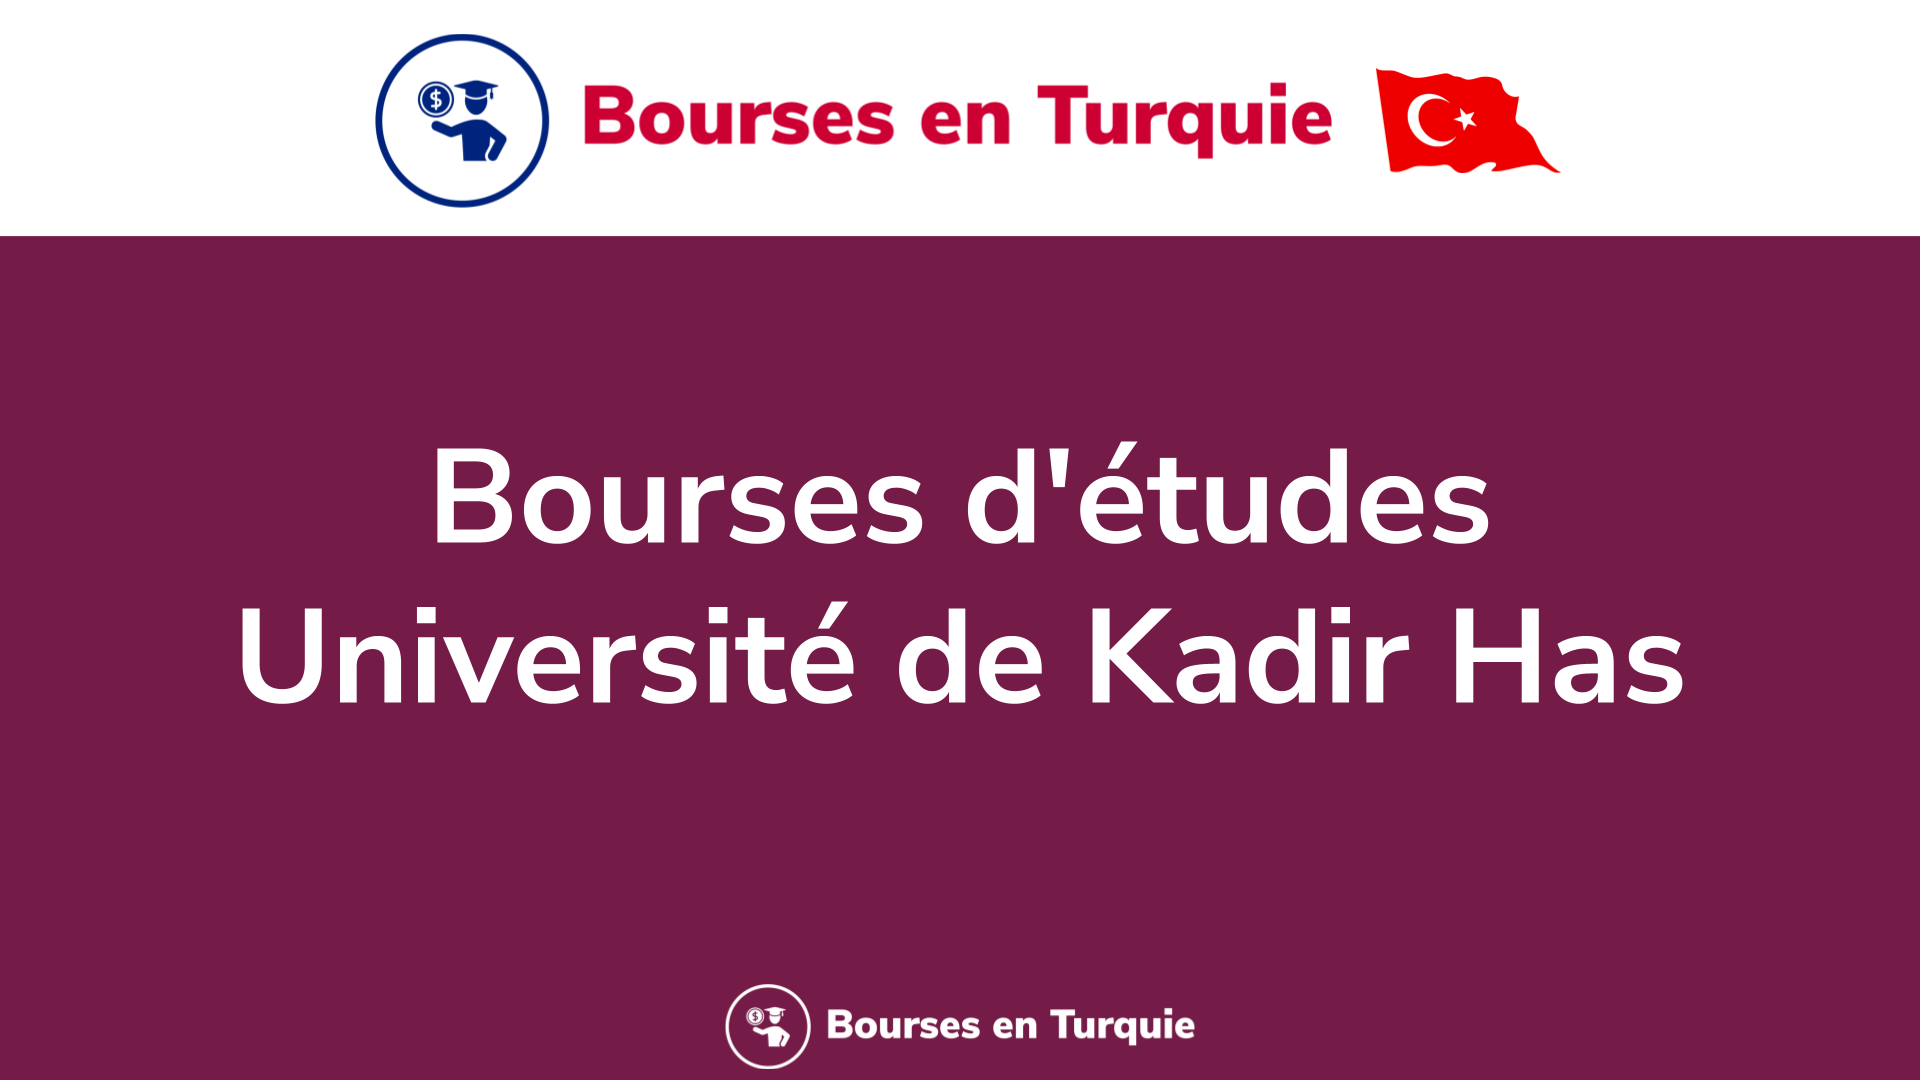 Bourses d'études Université de Kadir Has